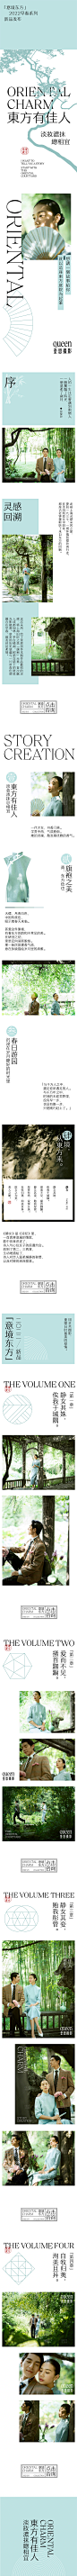 ◉◉【微信公众号：xinwei-1991】⇦了解更多。◉◉  微博@辛未设计    整理分享  。版式设计海报设计文字排版设计海报版式设计海报排版设计商业海报设计  (167).jpg